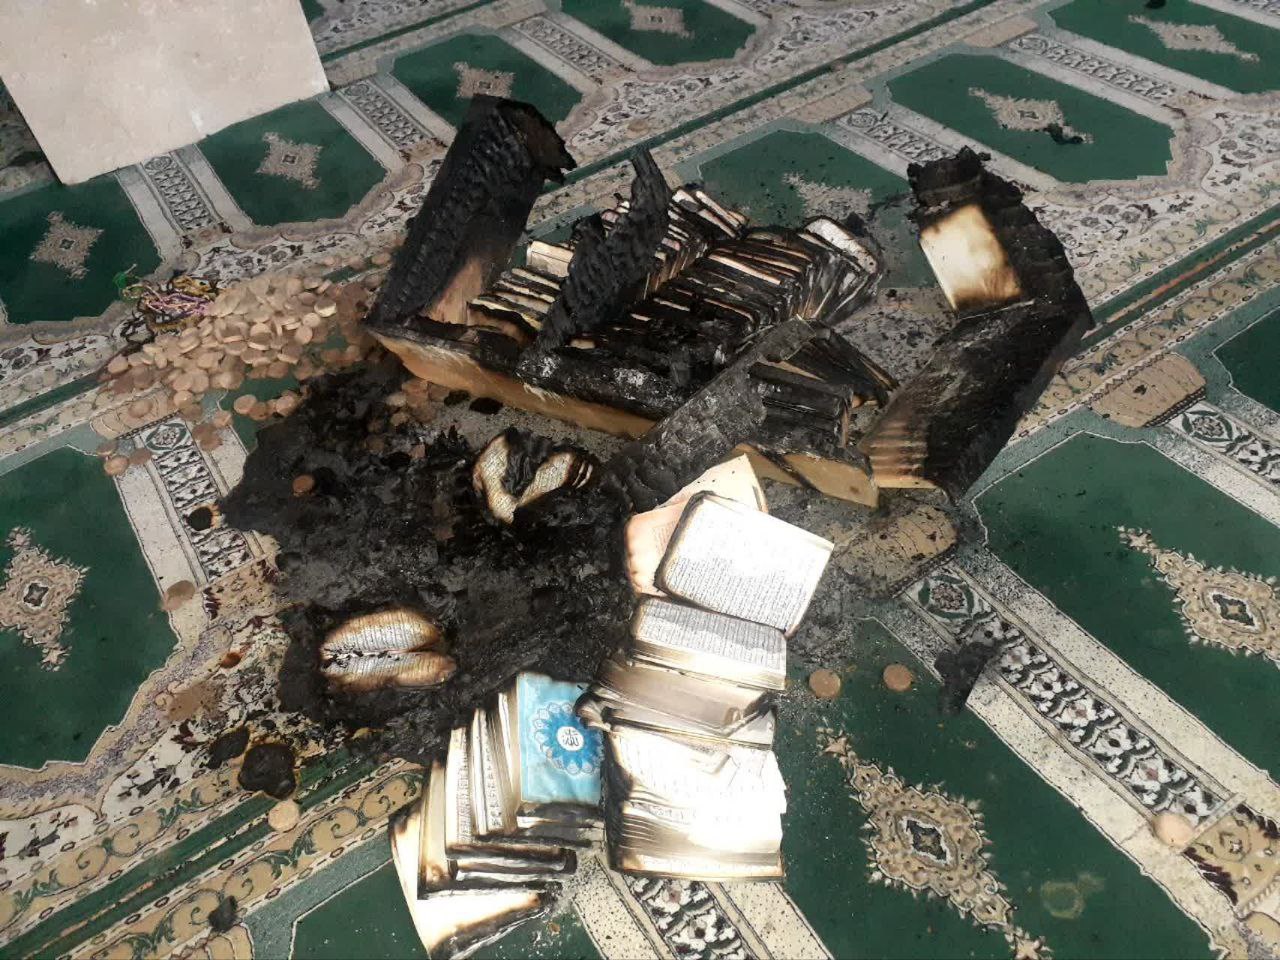 عوامل آتش سوزی مسجد جامع آبدانان شناسایی شدند+تصاویر